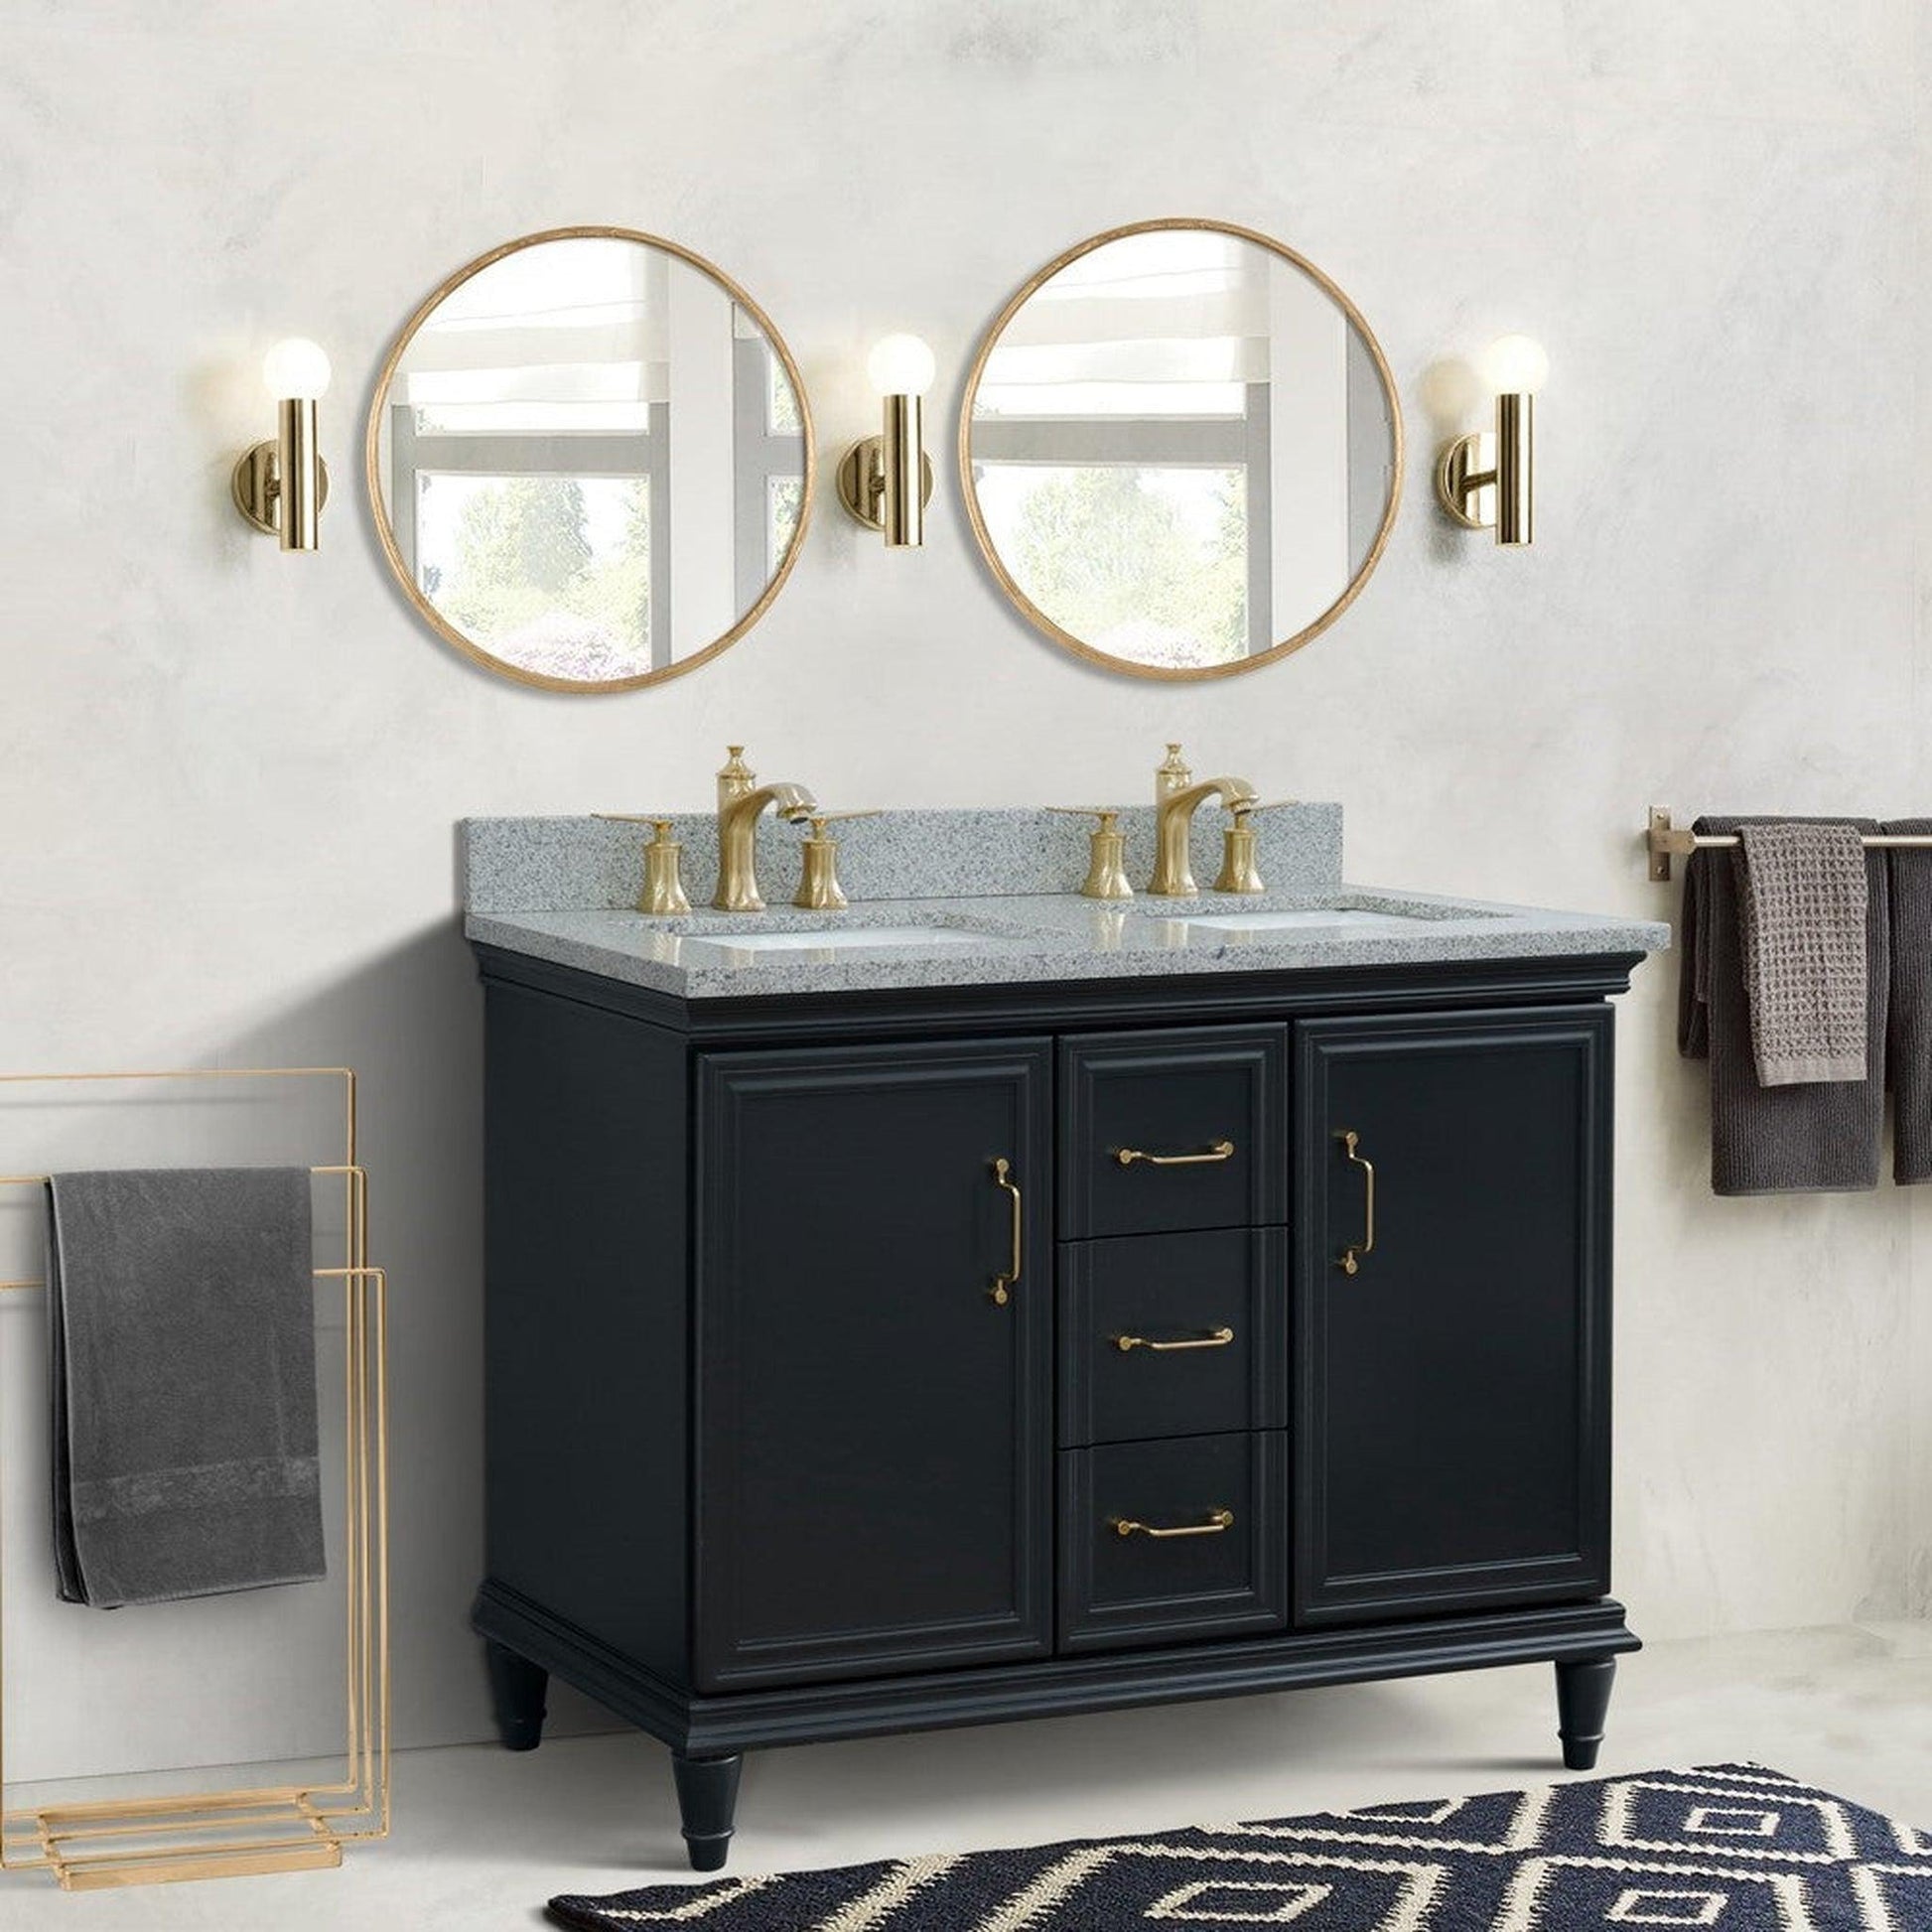 Bellaterra Home Forli 49" 2-Door 3-Drawer Dark Gray Freestanding Vanity Set With Ceramic Double Undermount Rectangular Sink and Gray Granite Top